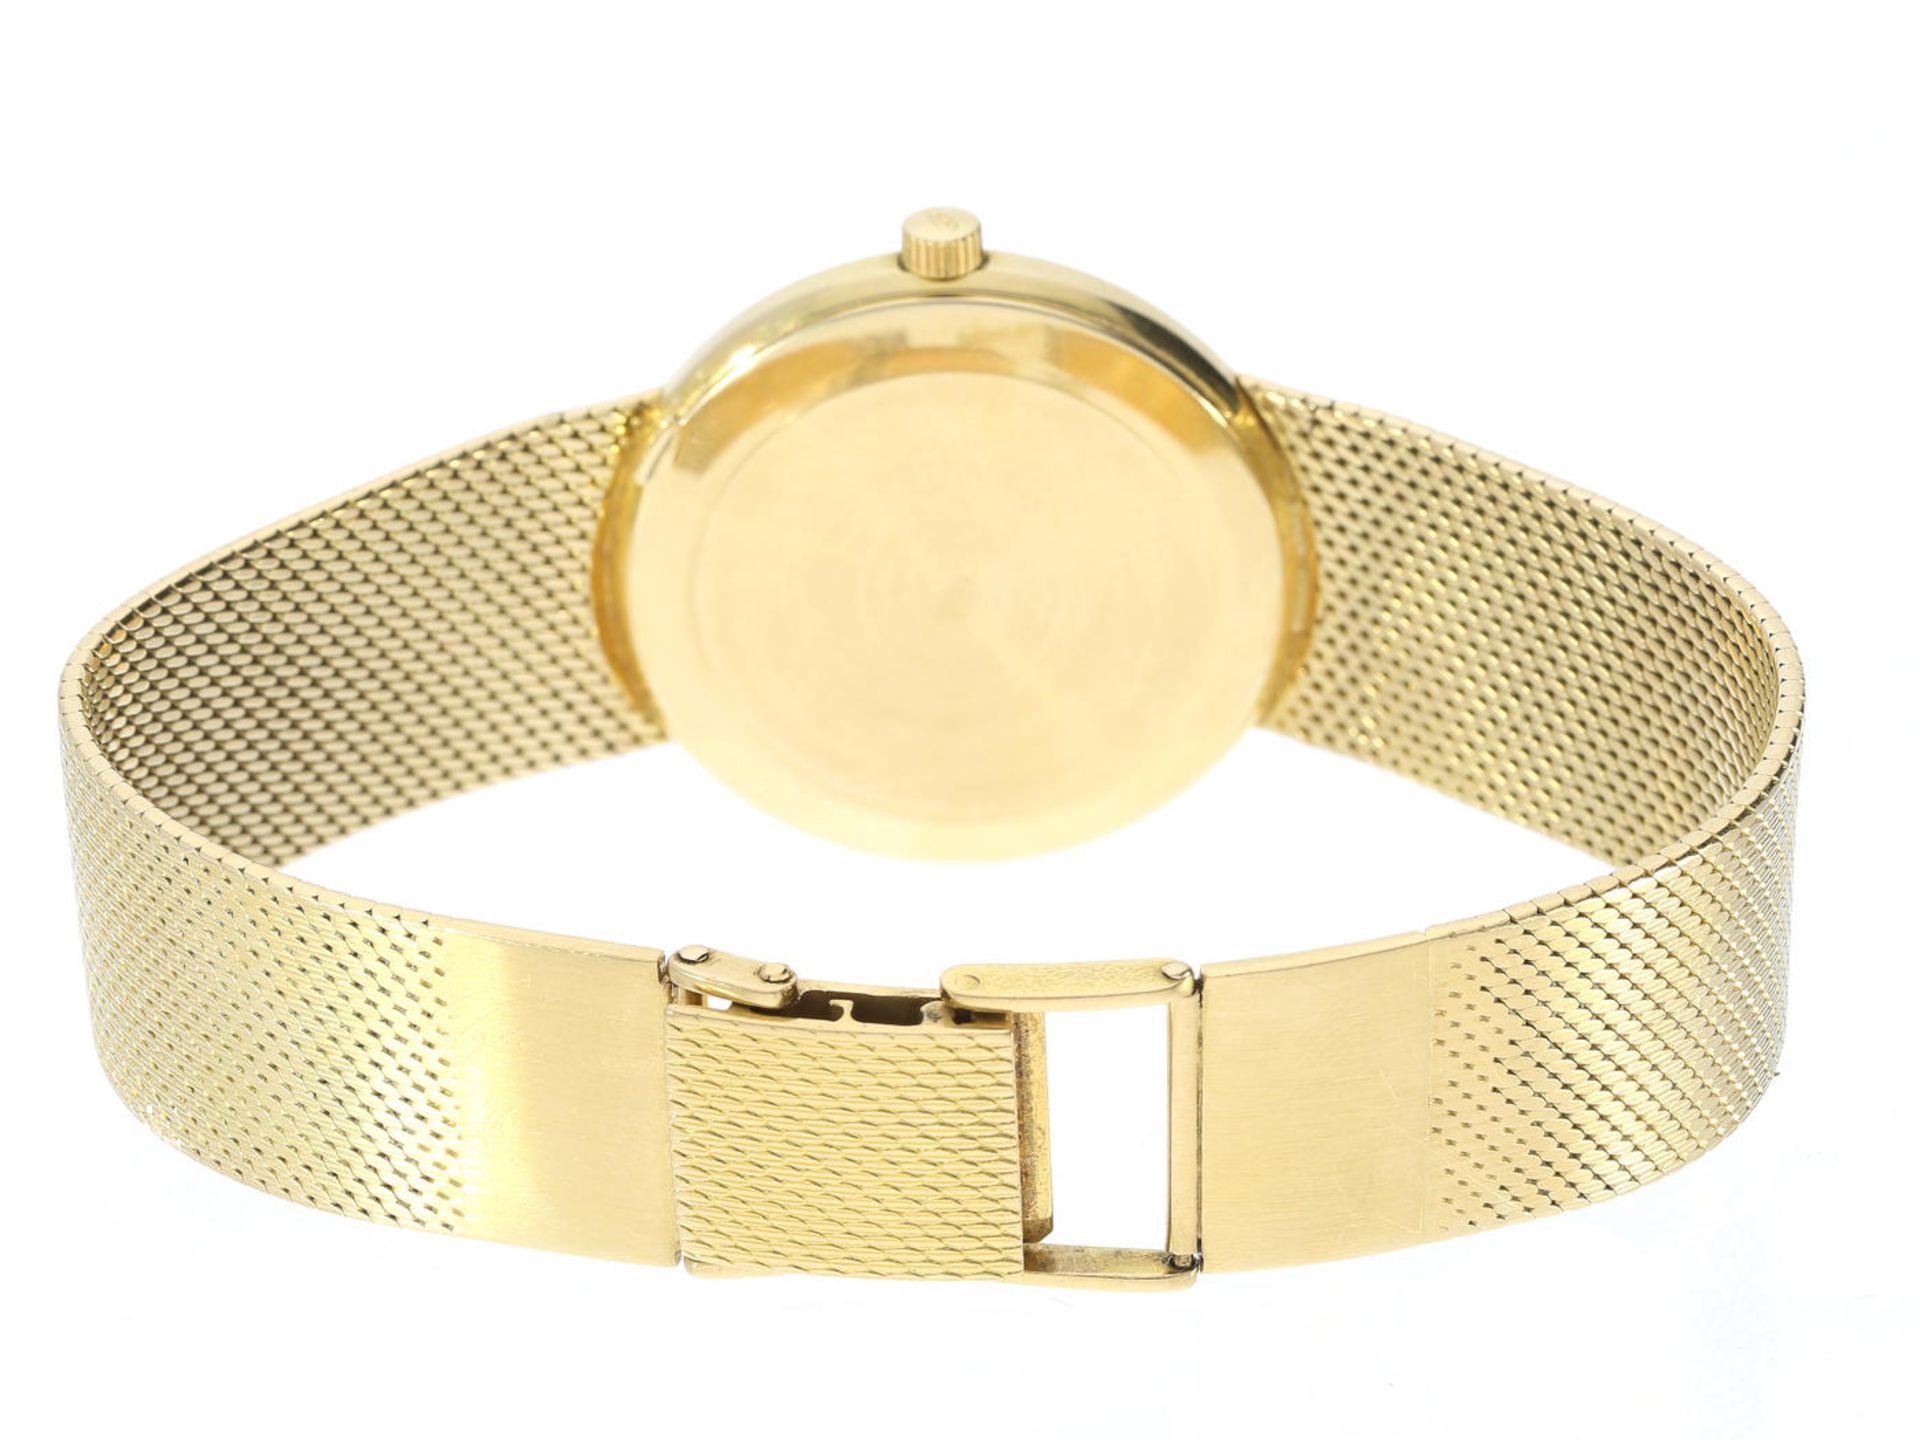 Armbanduhr: goldene Herrenuhr von IWC, ca. 1973 Ca. 34mm, ca. 84g, ca. 20cm lang, 18K Gold, - Bild 3 aus 3